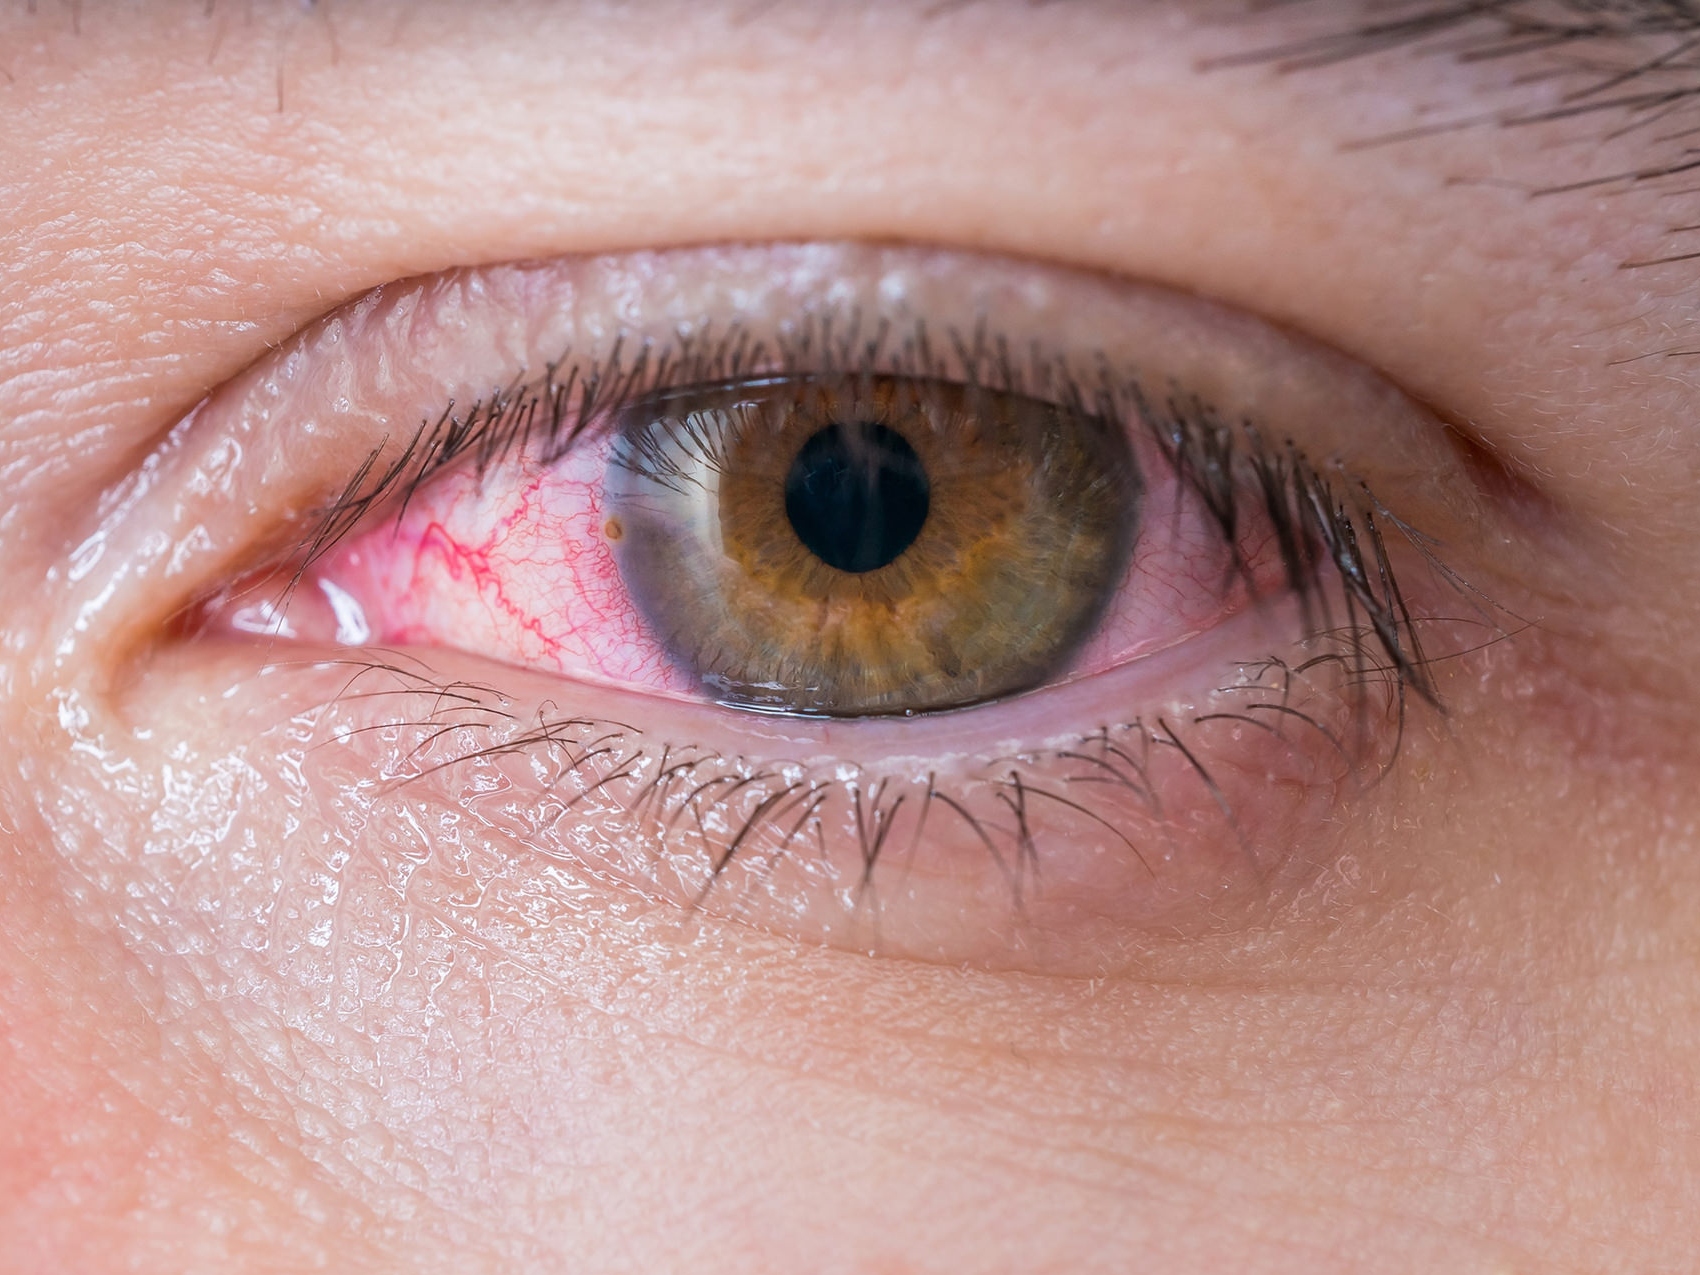 De afbeelding toont een close-up van een ongezond oog, ter illustratie van hoe potentiële ooggevaren er uit kunnen zien. 